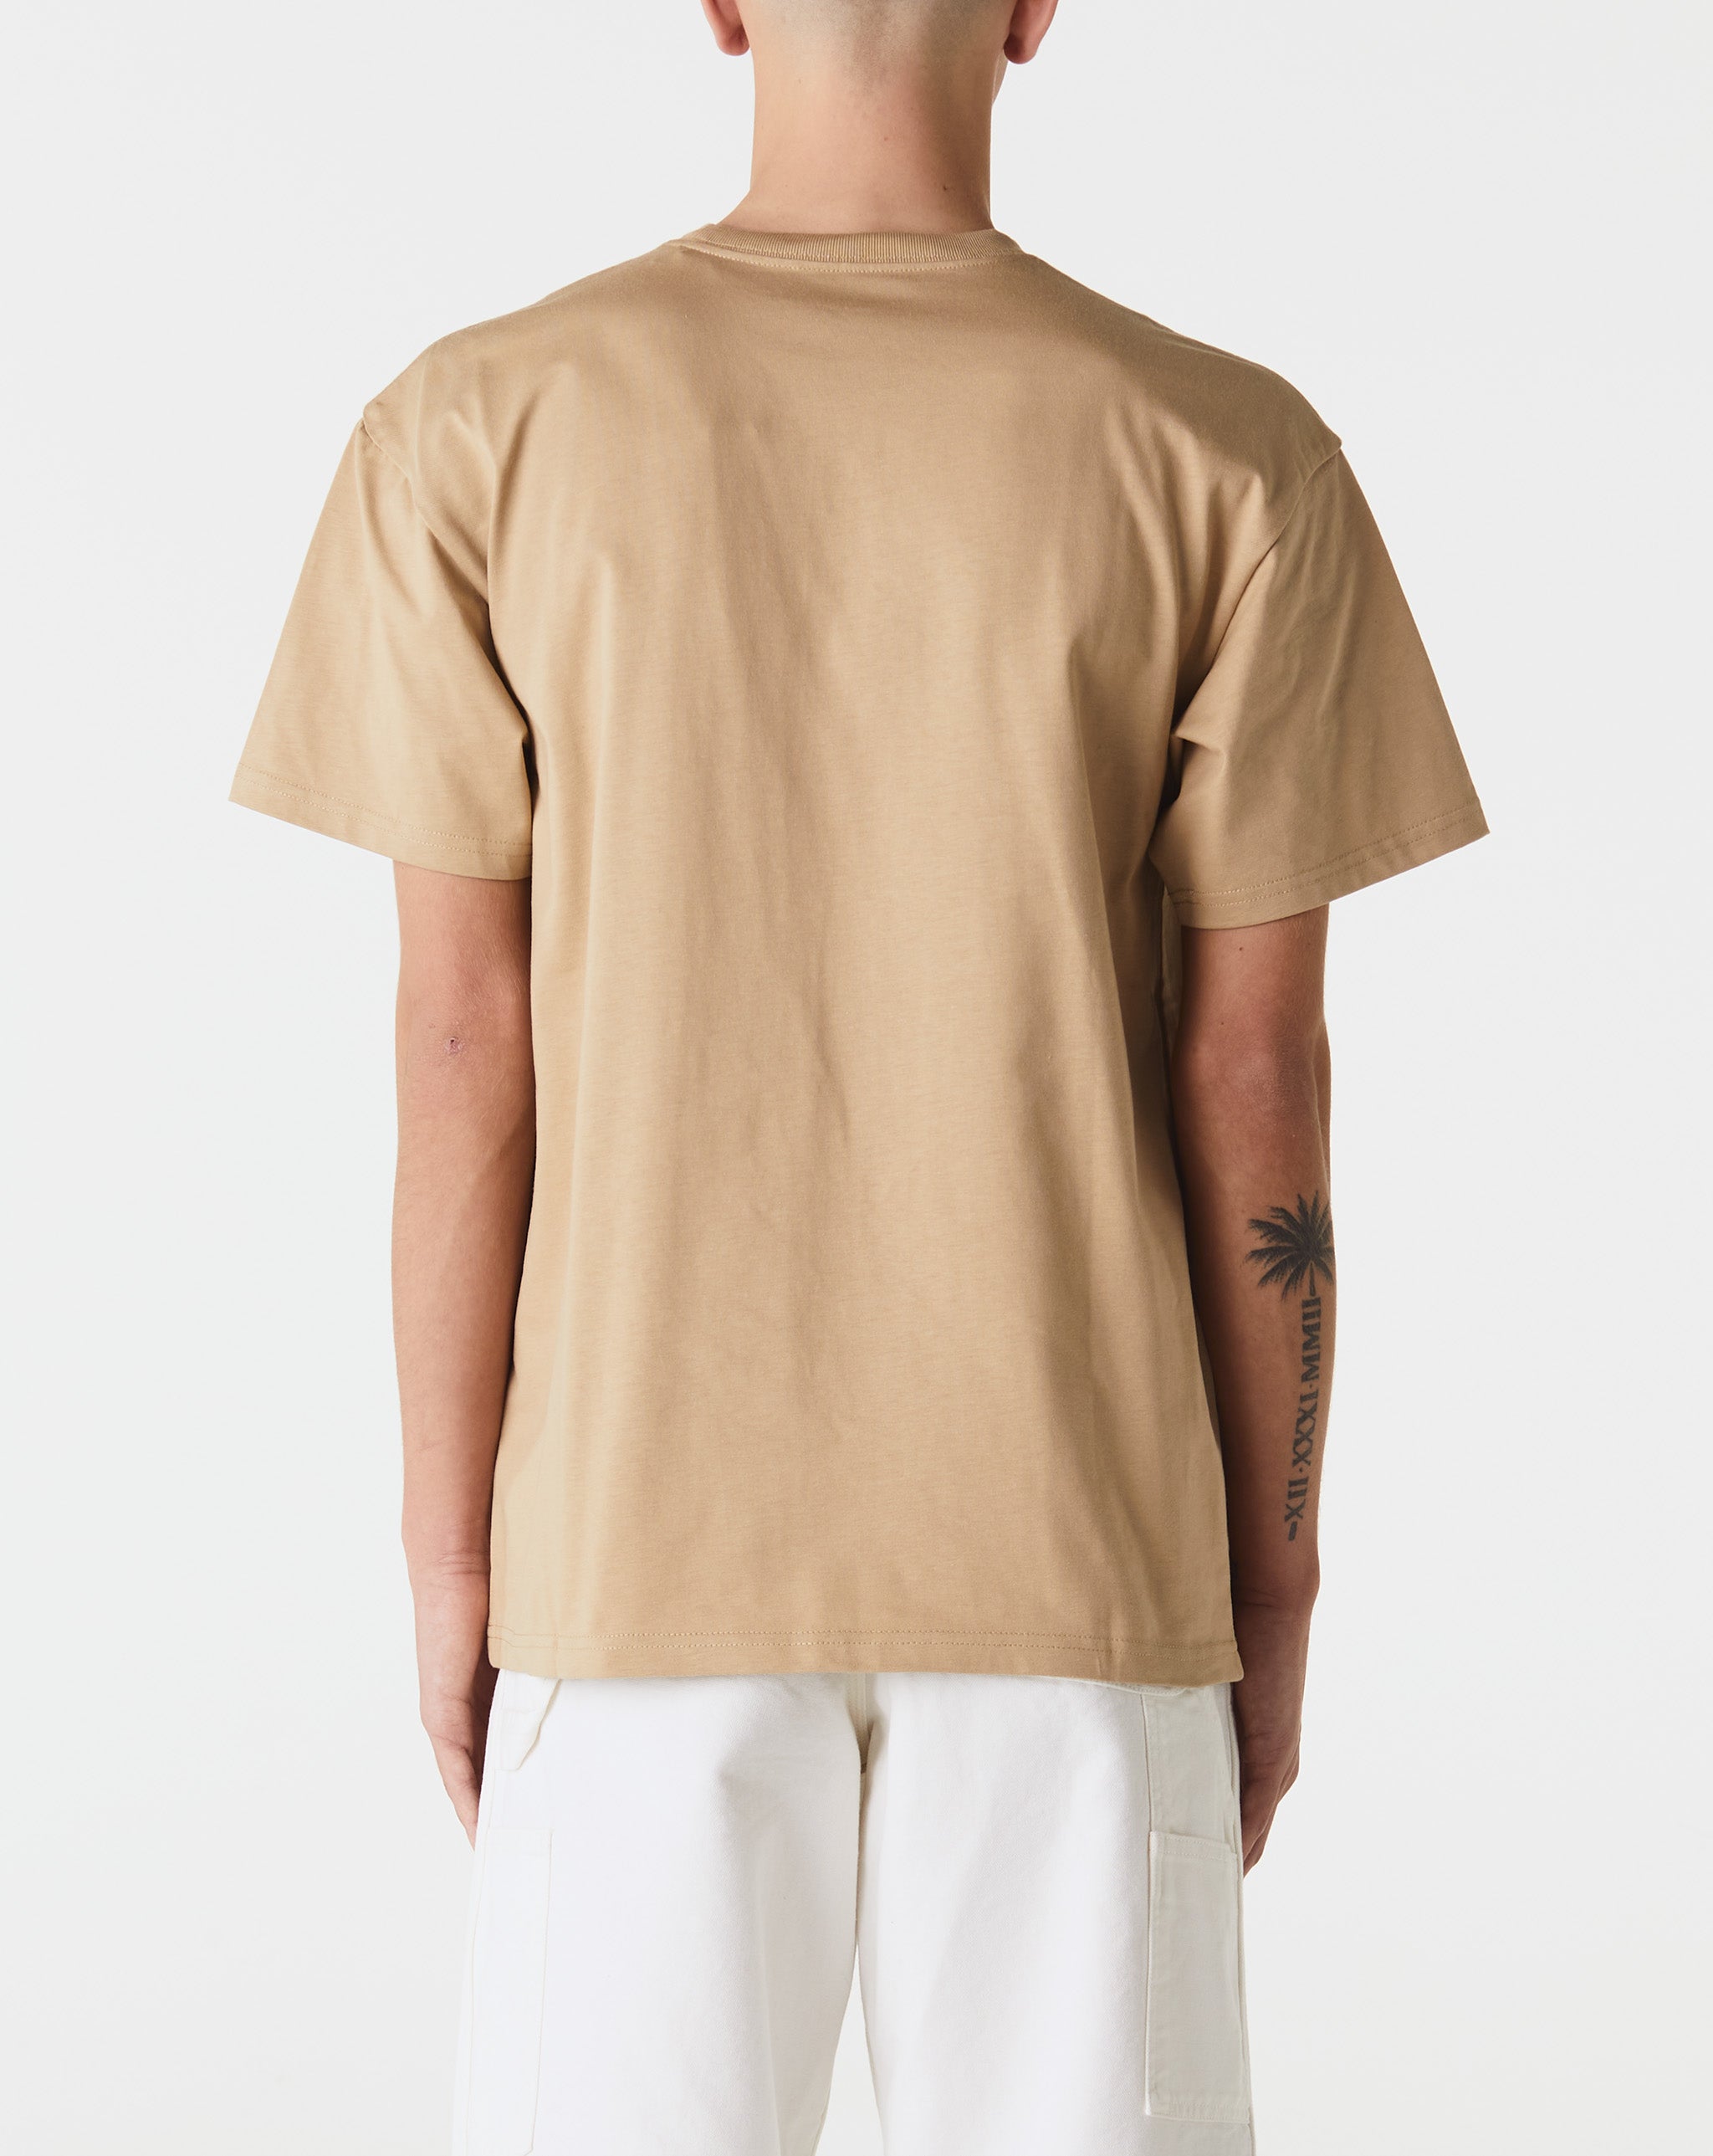 Carhartt WIP Chase T-Shirt  - Cheap Urlfreeze Jordan outlet